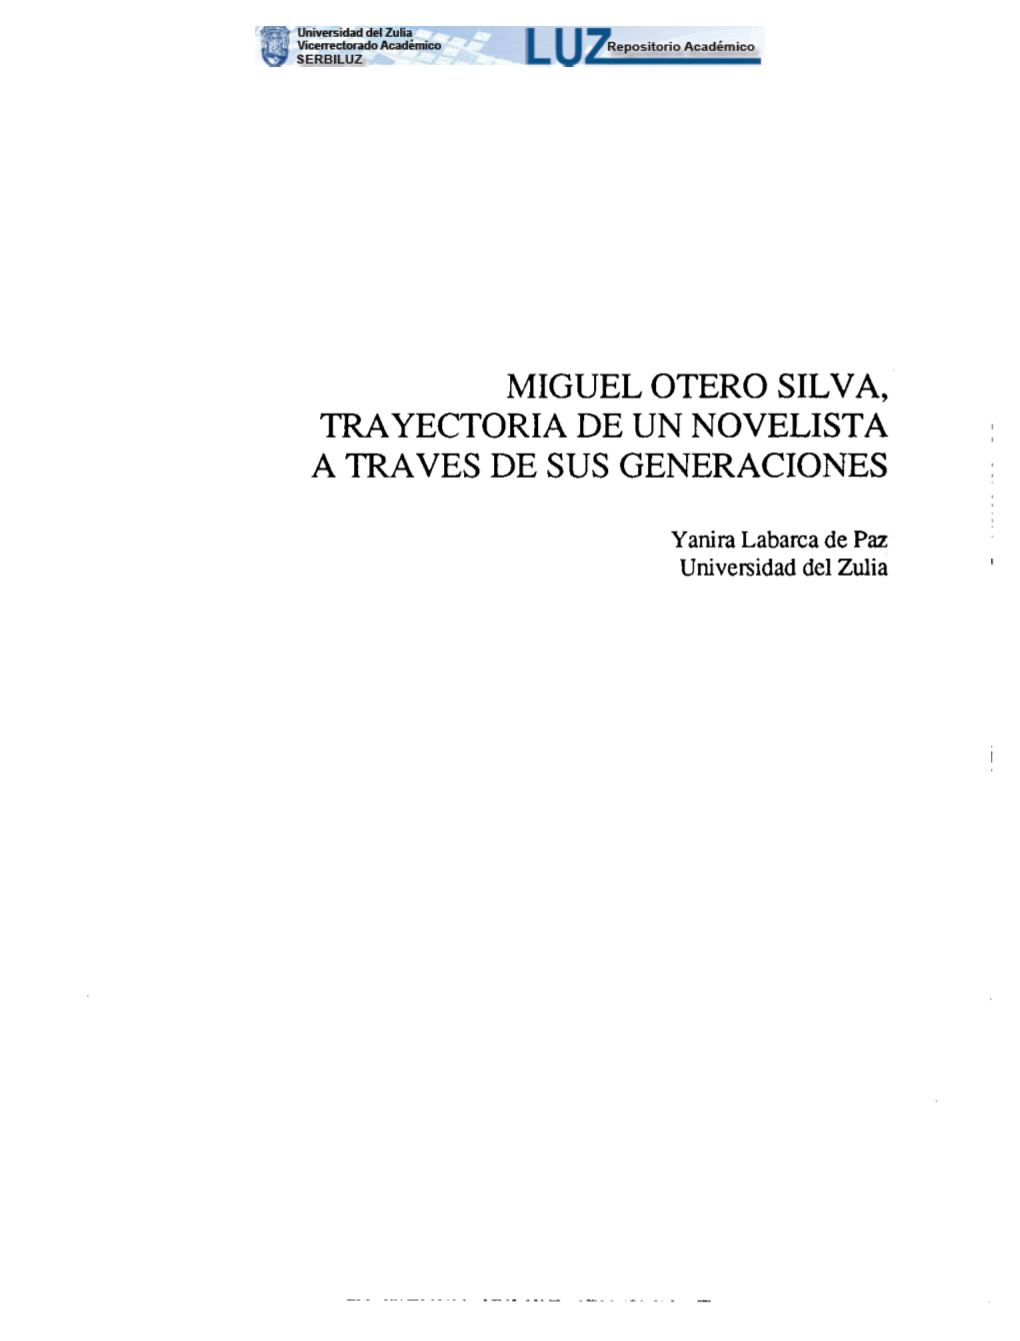 Miguel Otero Silva, Trayectoria De Un Novelista a Través De Sus Generaciones